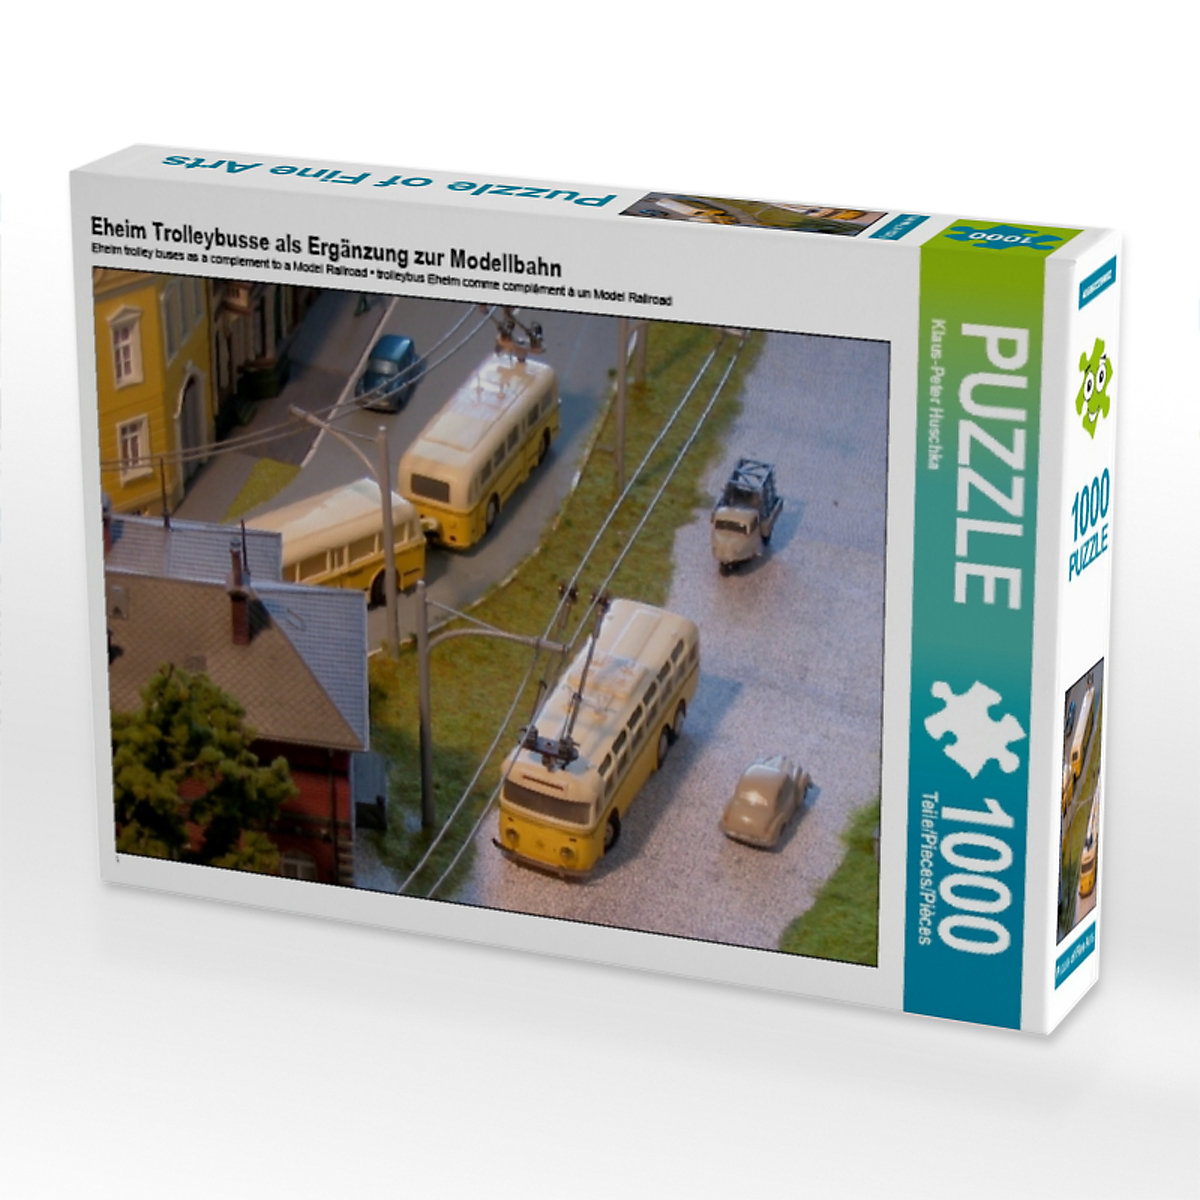 CALVENDO® Puzzle CALVENDO Puzzle Eheim Trolleybusse als Ergänzung zur Modellbahn 1000 Teile Foto-Puzzle für glückliche Stunden